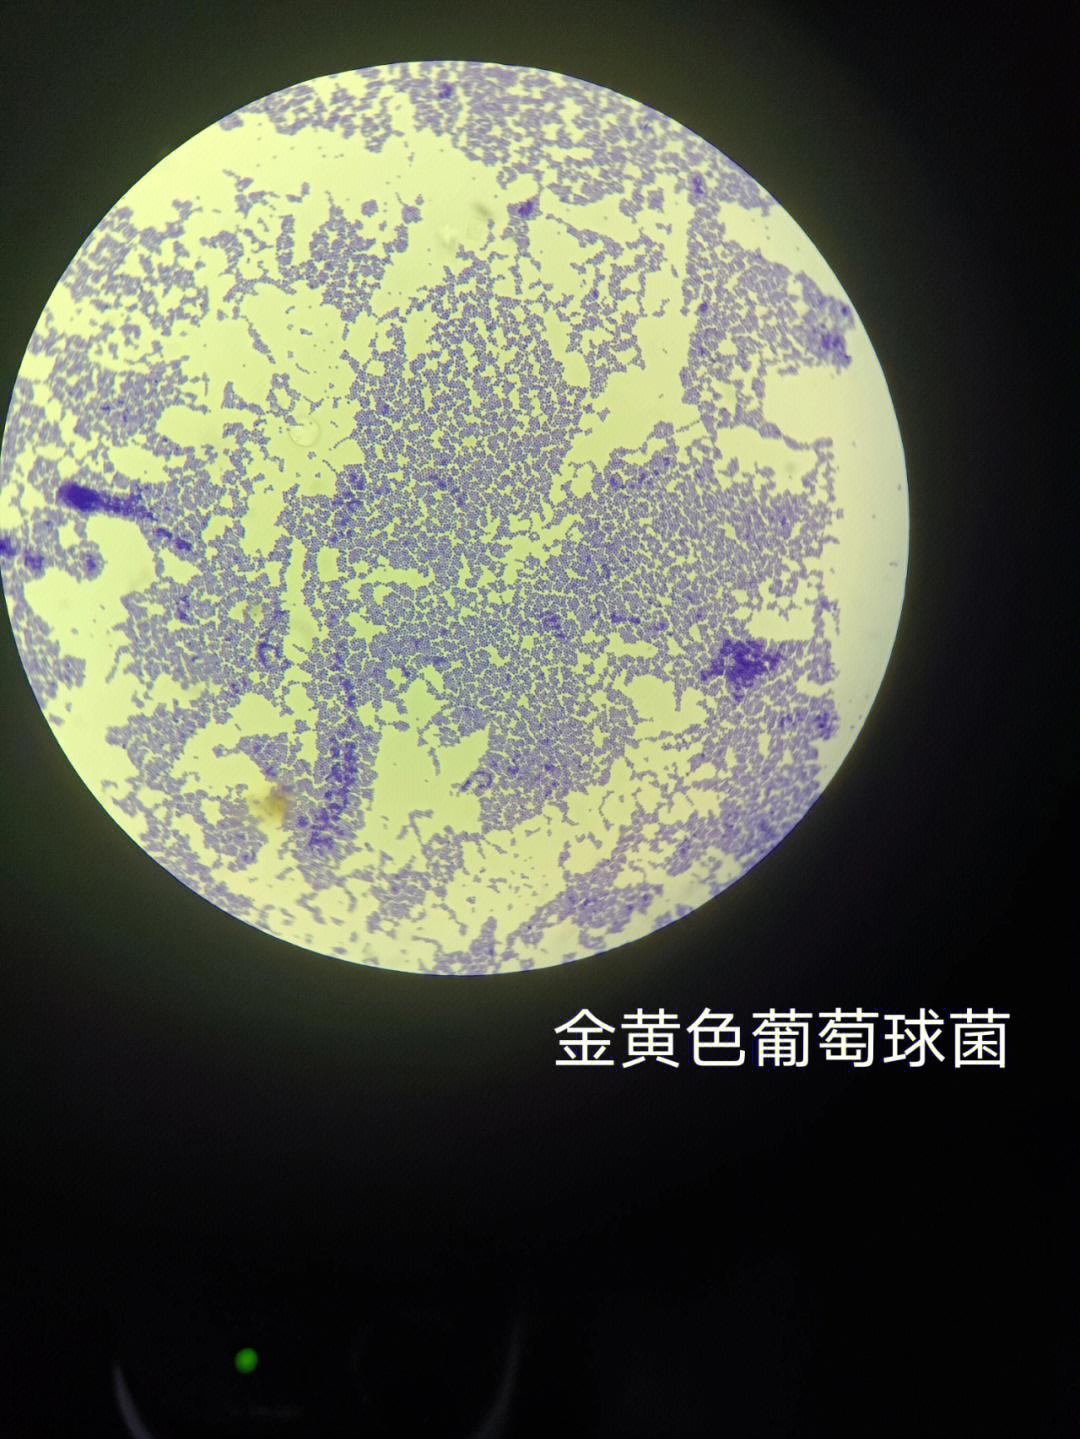 金黄色葡萄球菌乙型链球菌肺炎球菌淋球菌脑炎球菌